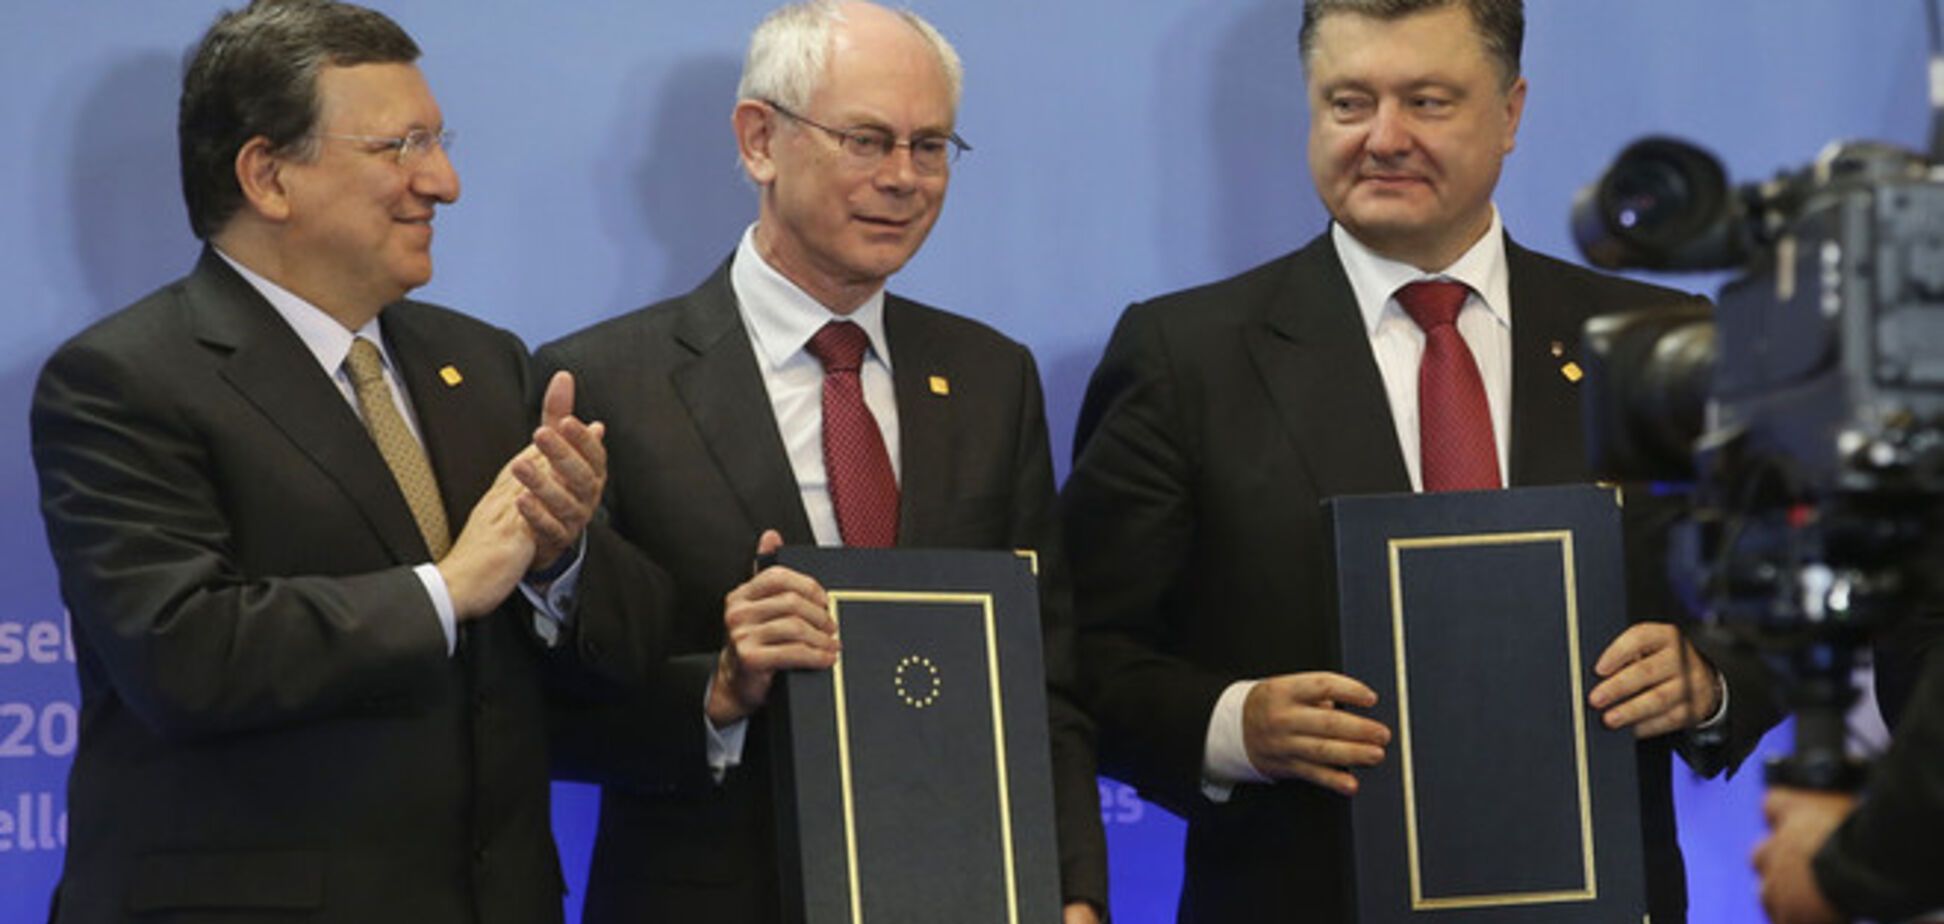 Майдан отпразднует подписание соглашения об Ассоциации с ЕС